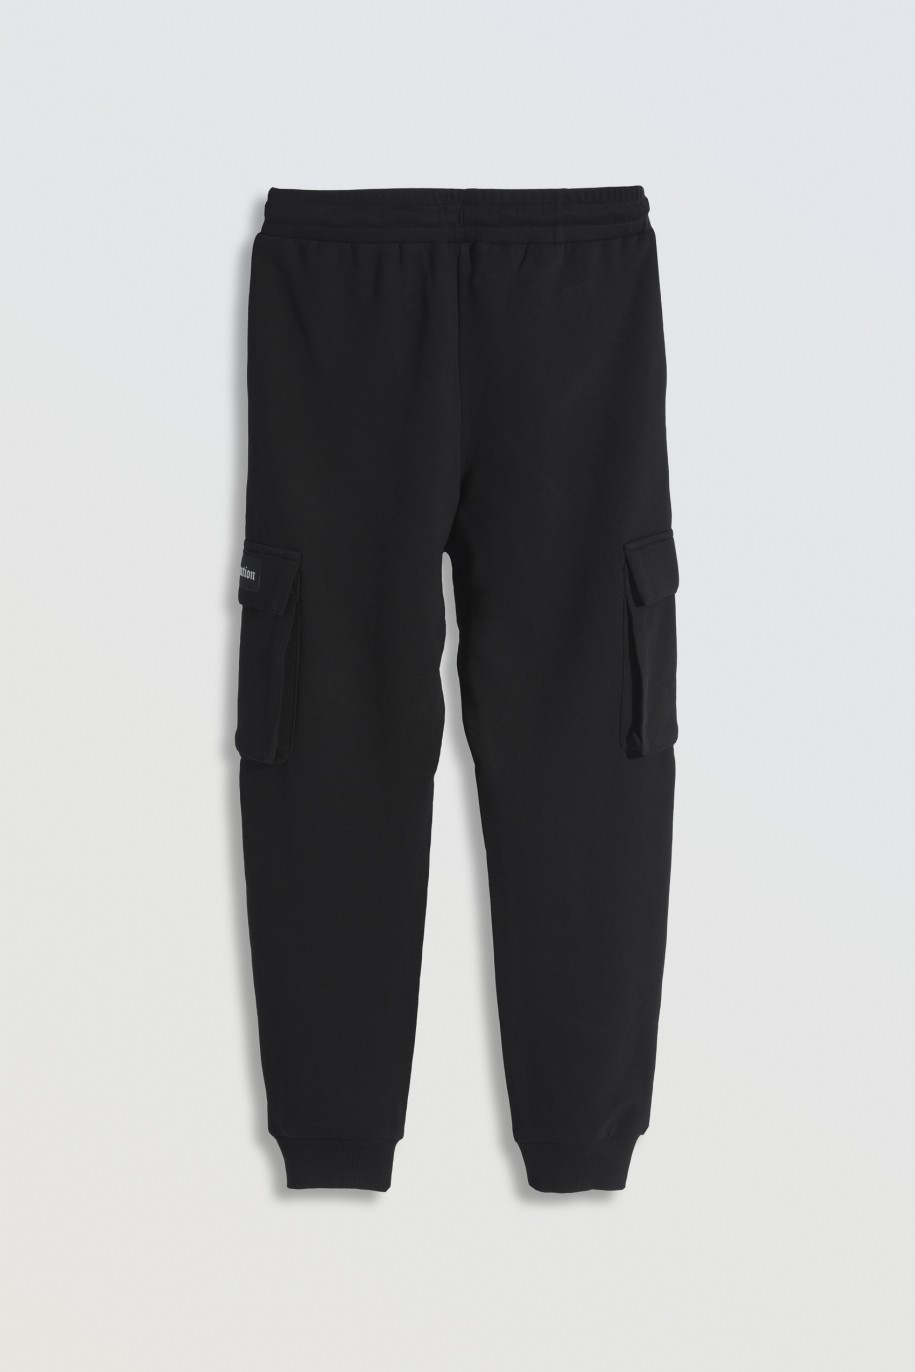 Czarne spodnie dresowe oversize z przestrzennymi kieszeniami na nogawkach - 46794